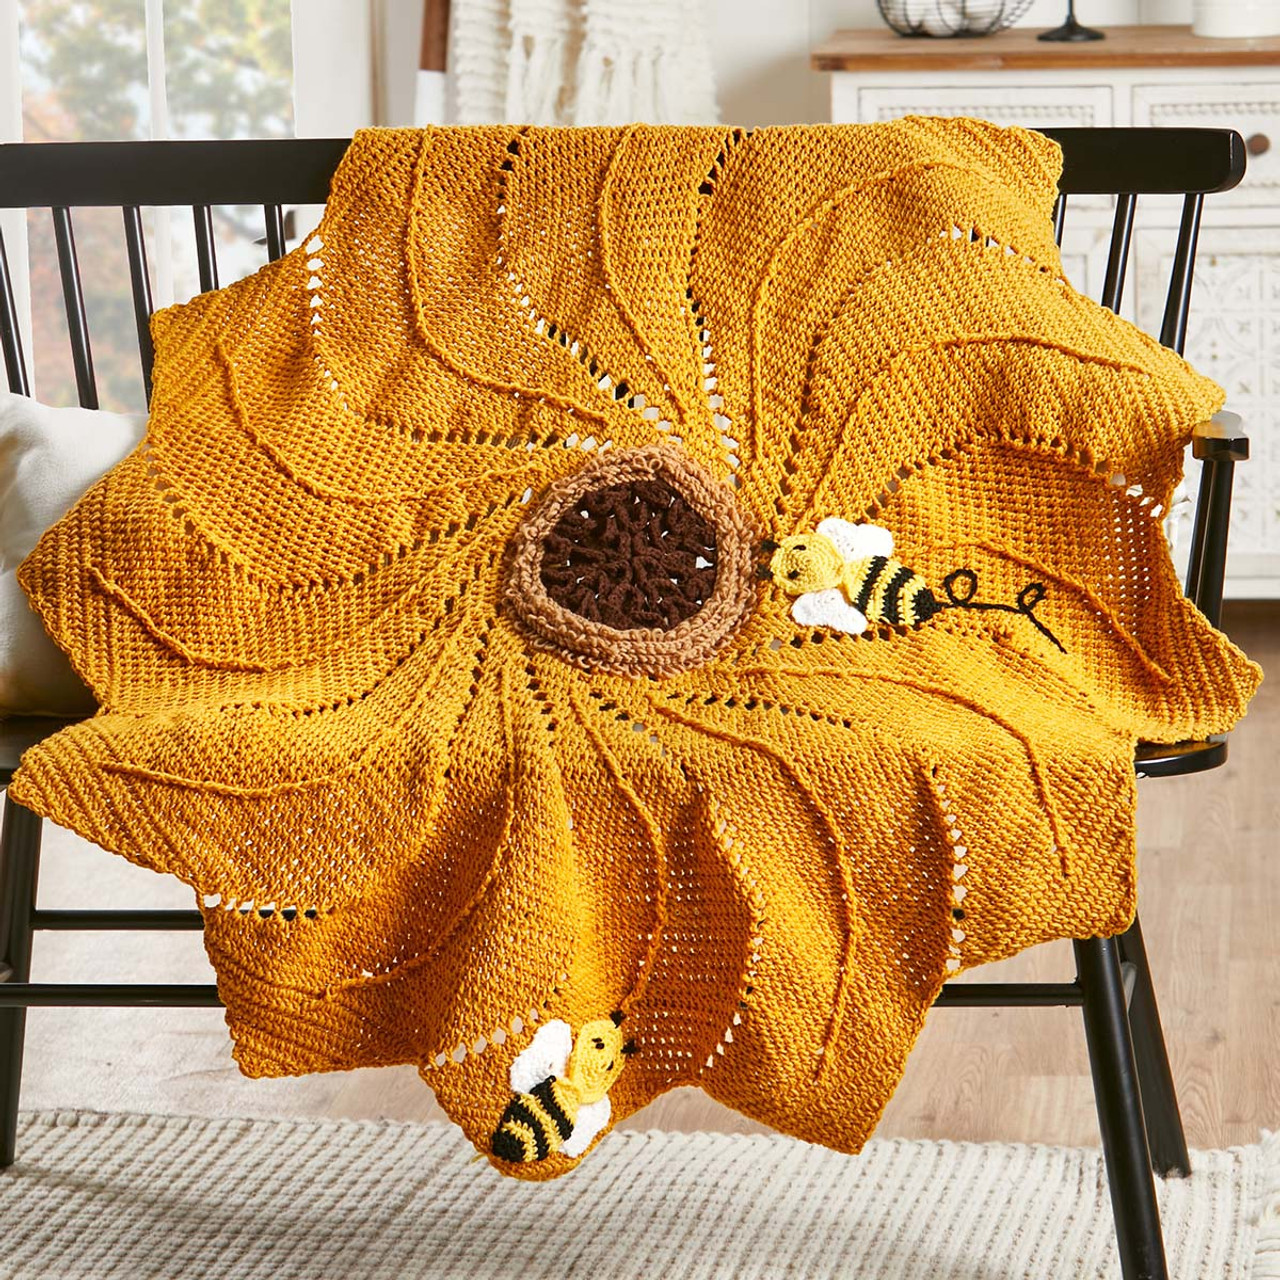 Sunflowers & Butterflies or Bees Kitchen Decor, Sunflower Cutting